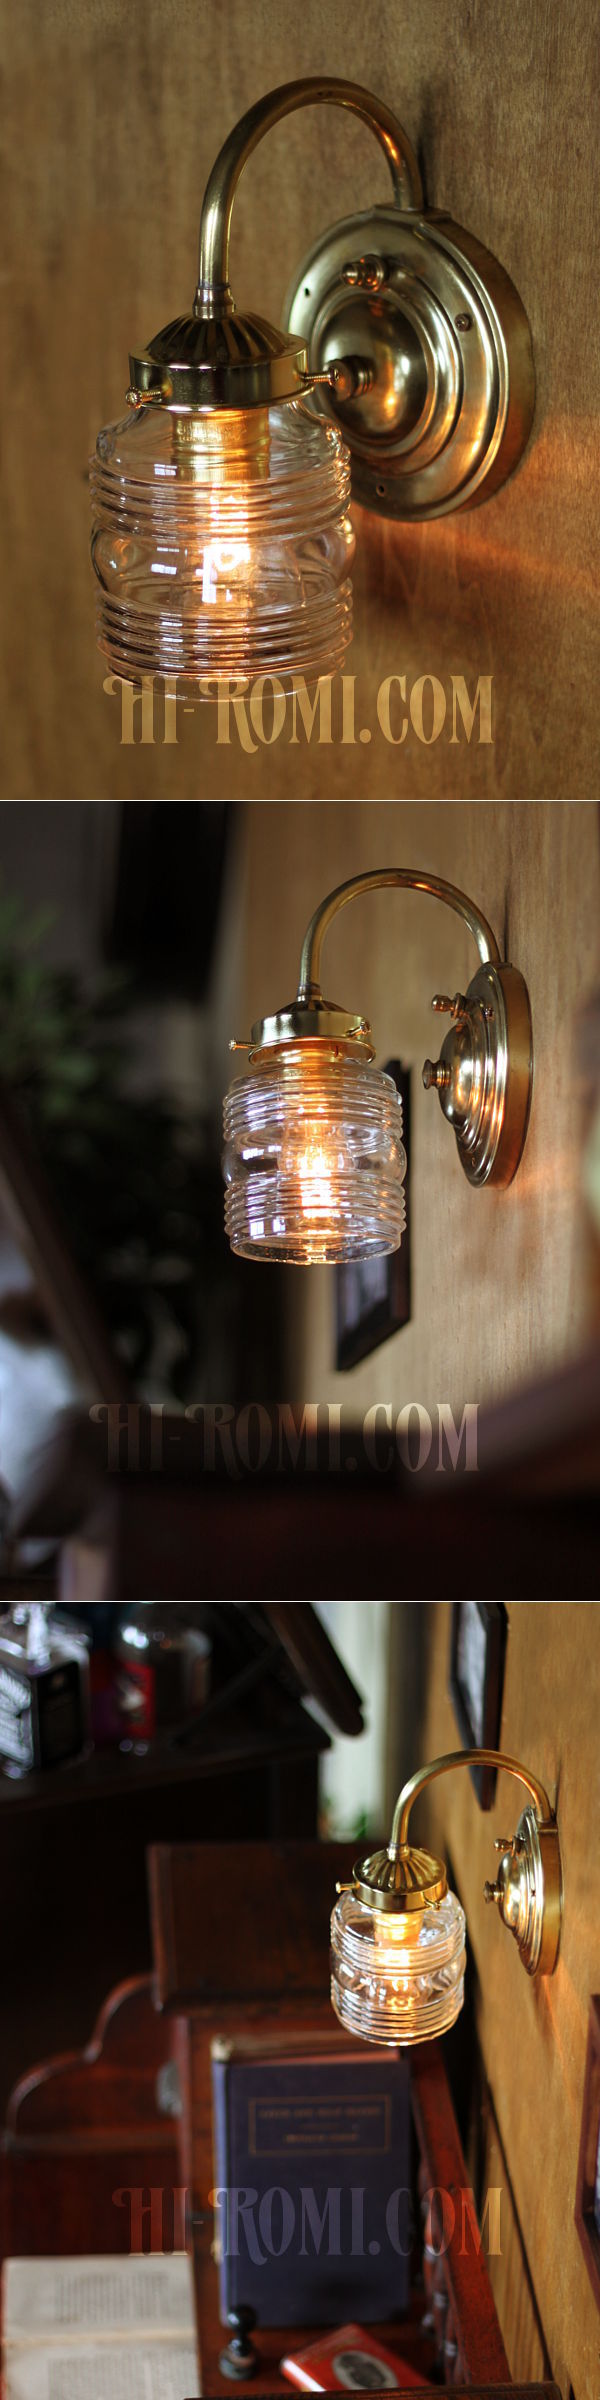 ヴィンテージコロニアルクリアガラスビーハイブシェード真鍮ブラケットランプ/ヴィクトリアン壁照明